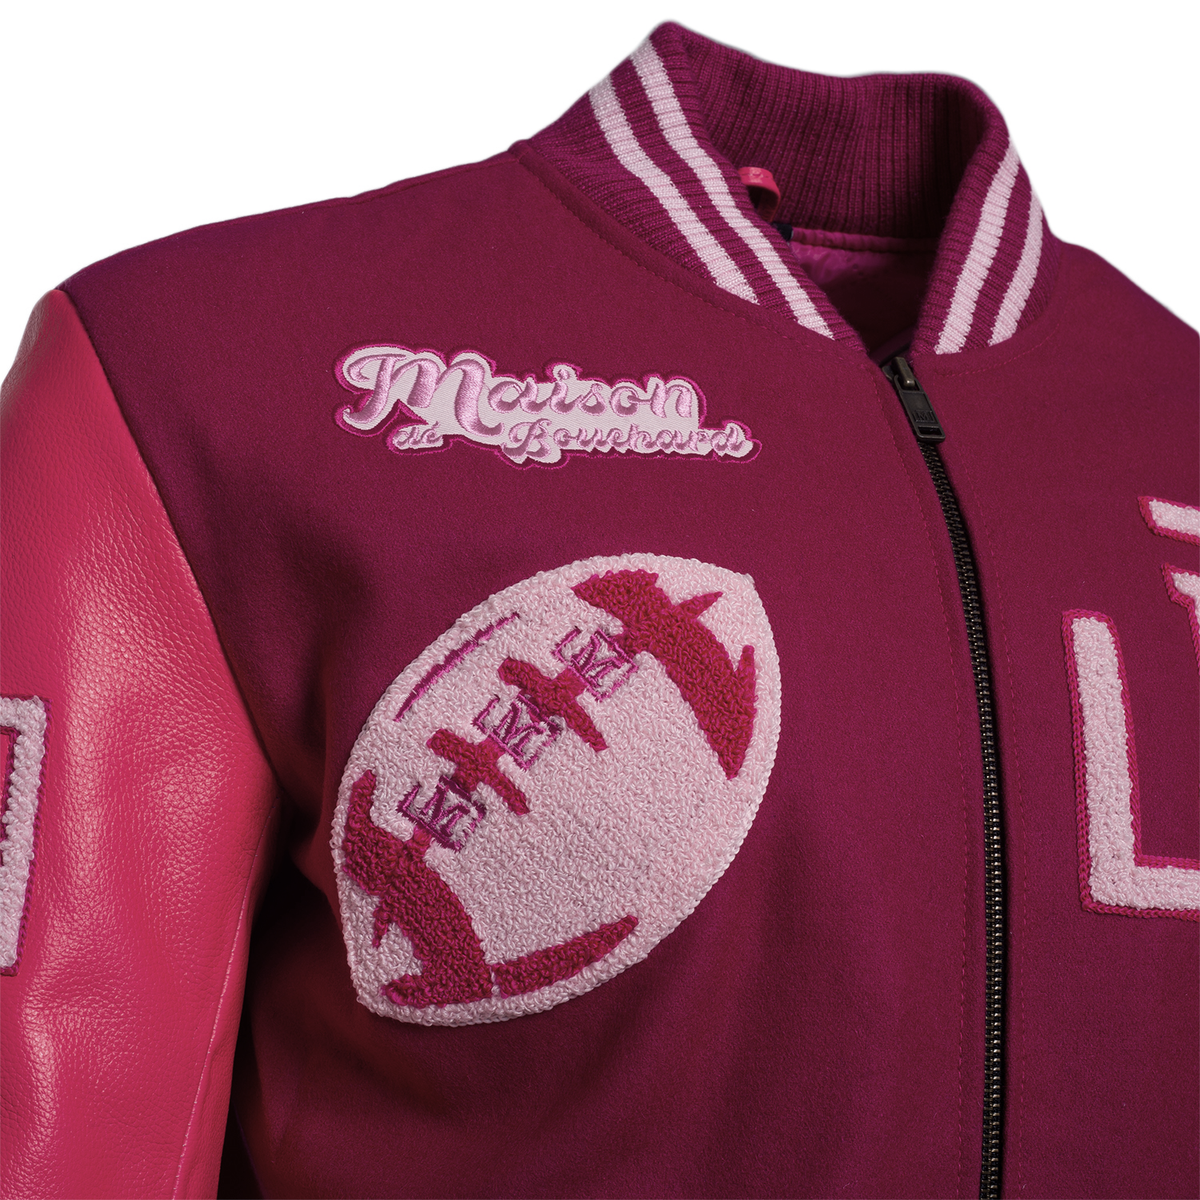 MDB Brand Men's Varsity Letterman Jacket V2 - Monochrome Pink